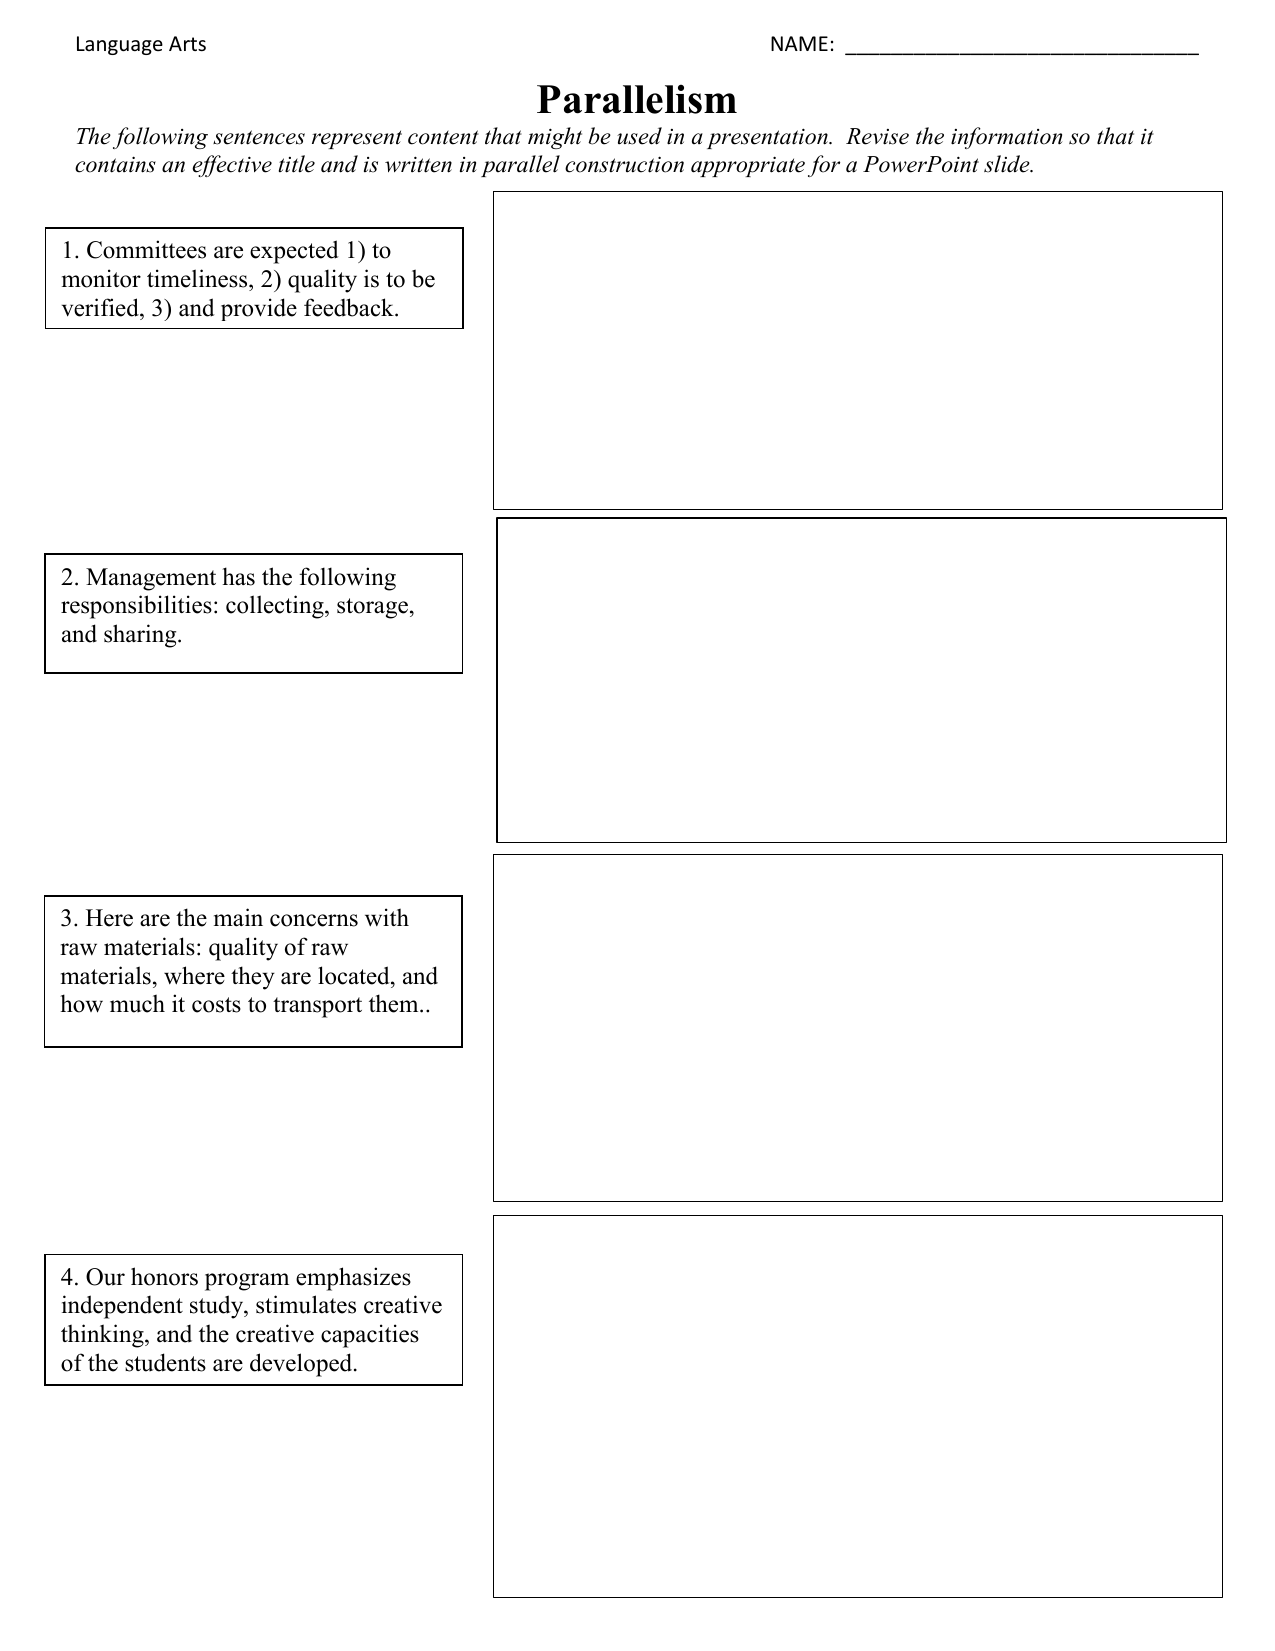 parallelism-powerpoint-slide-worksheet